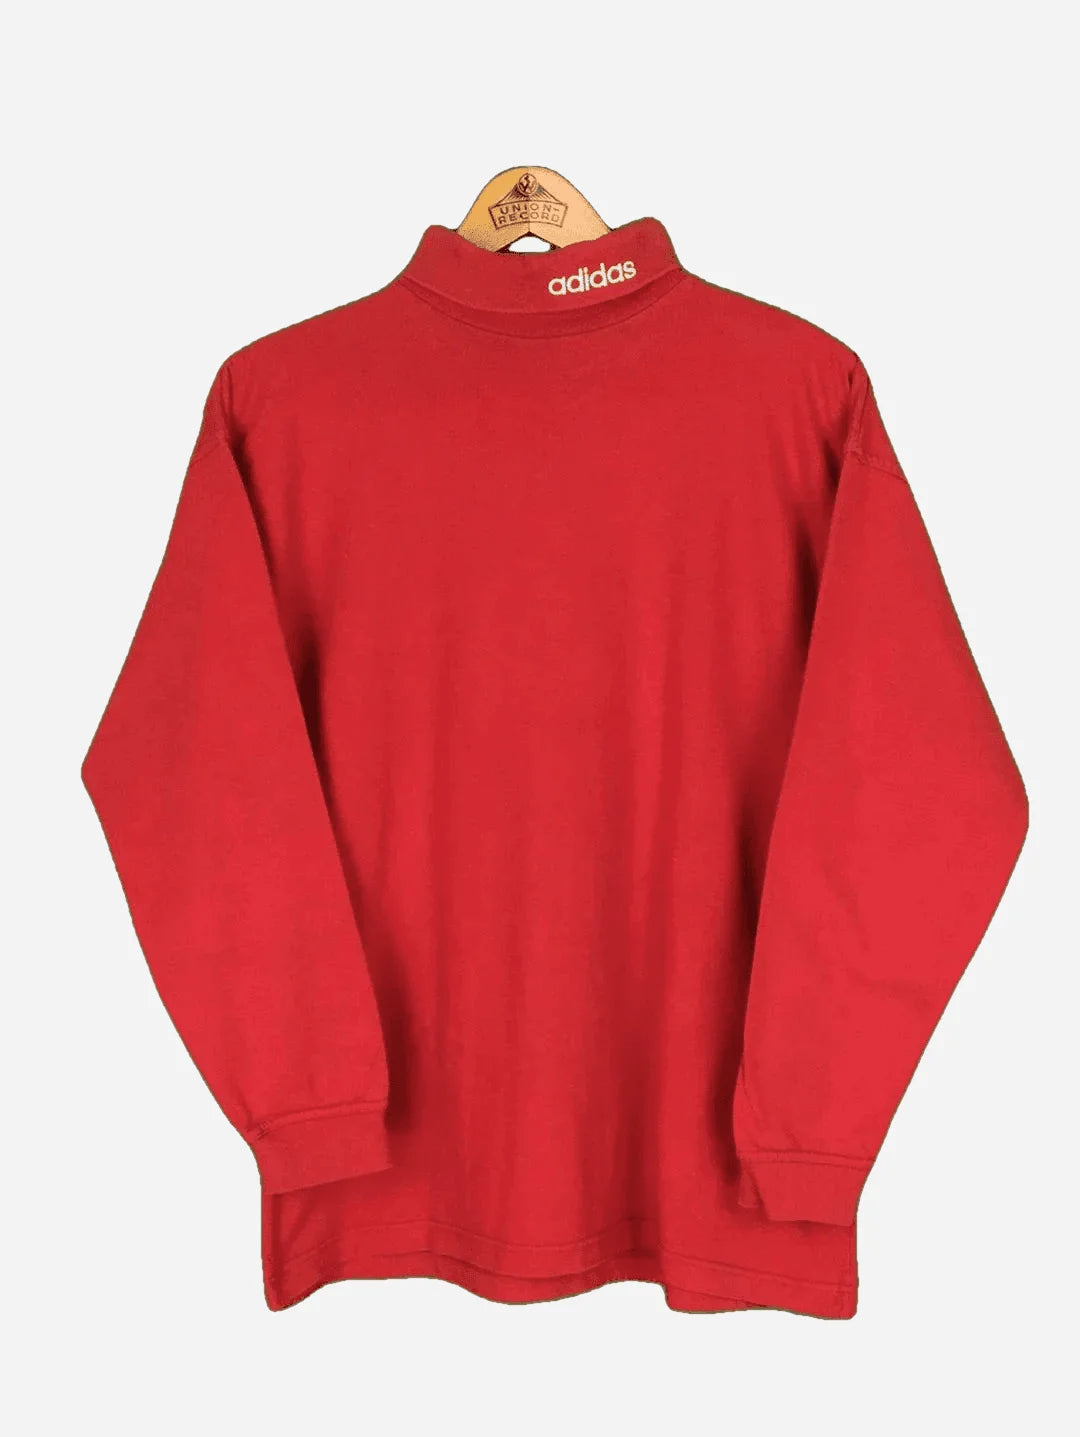 Adidas Rollkragen Sweater (S)